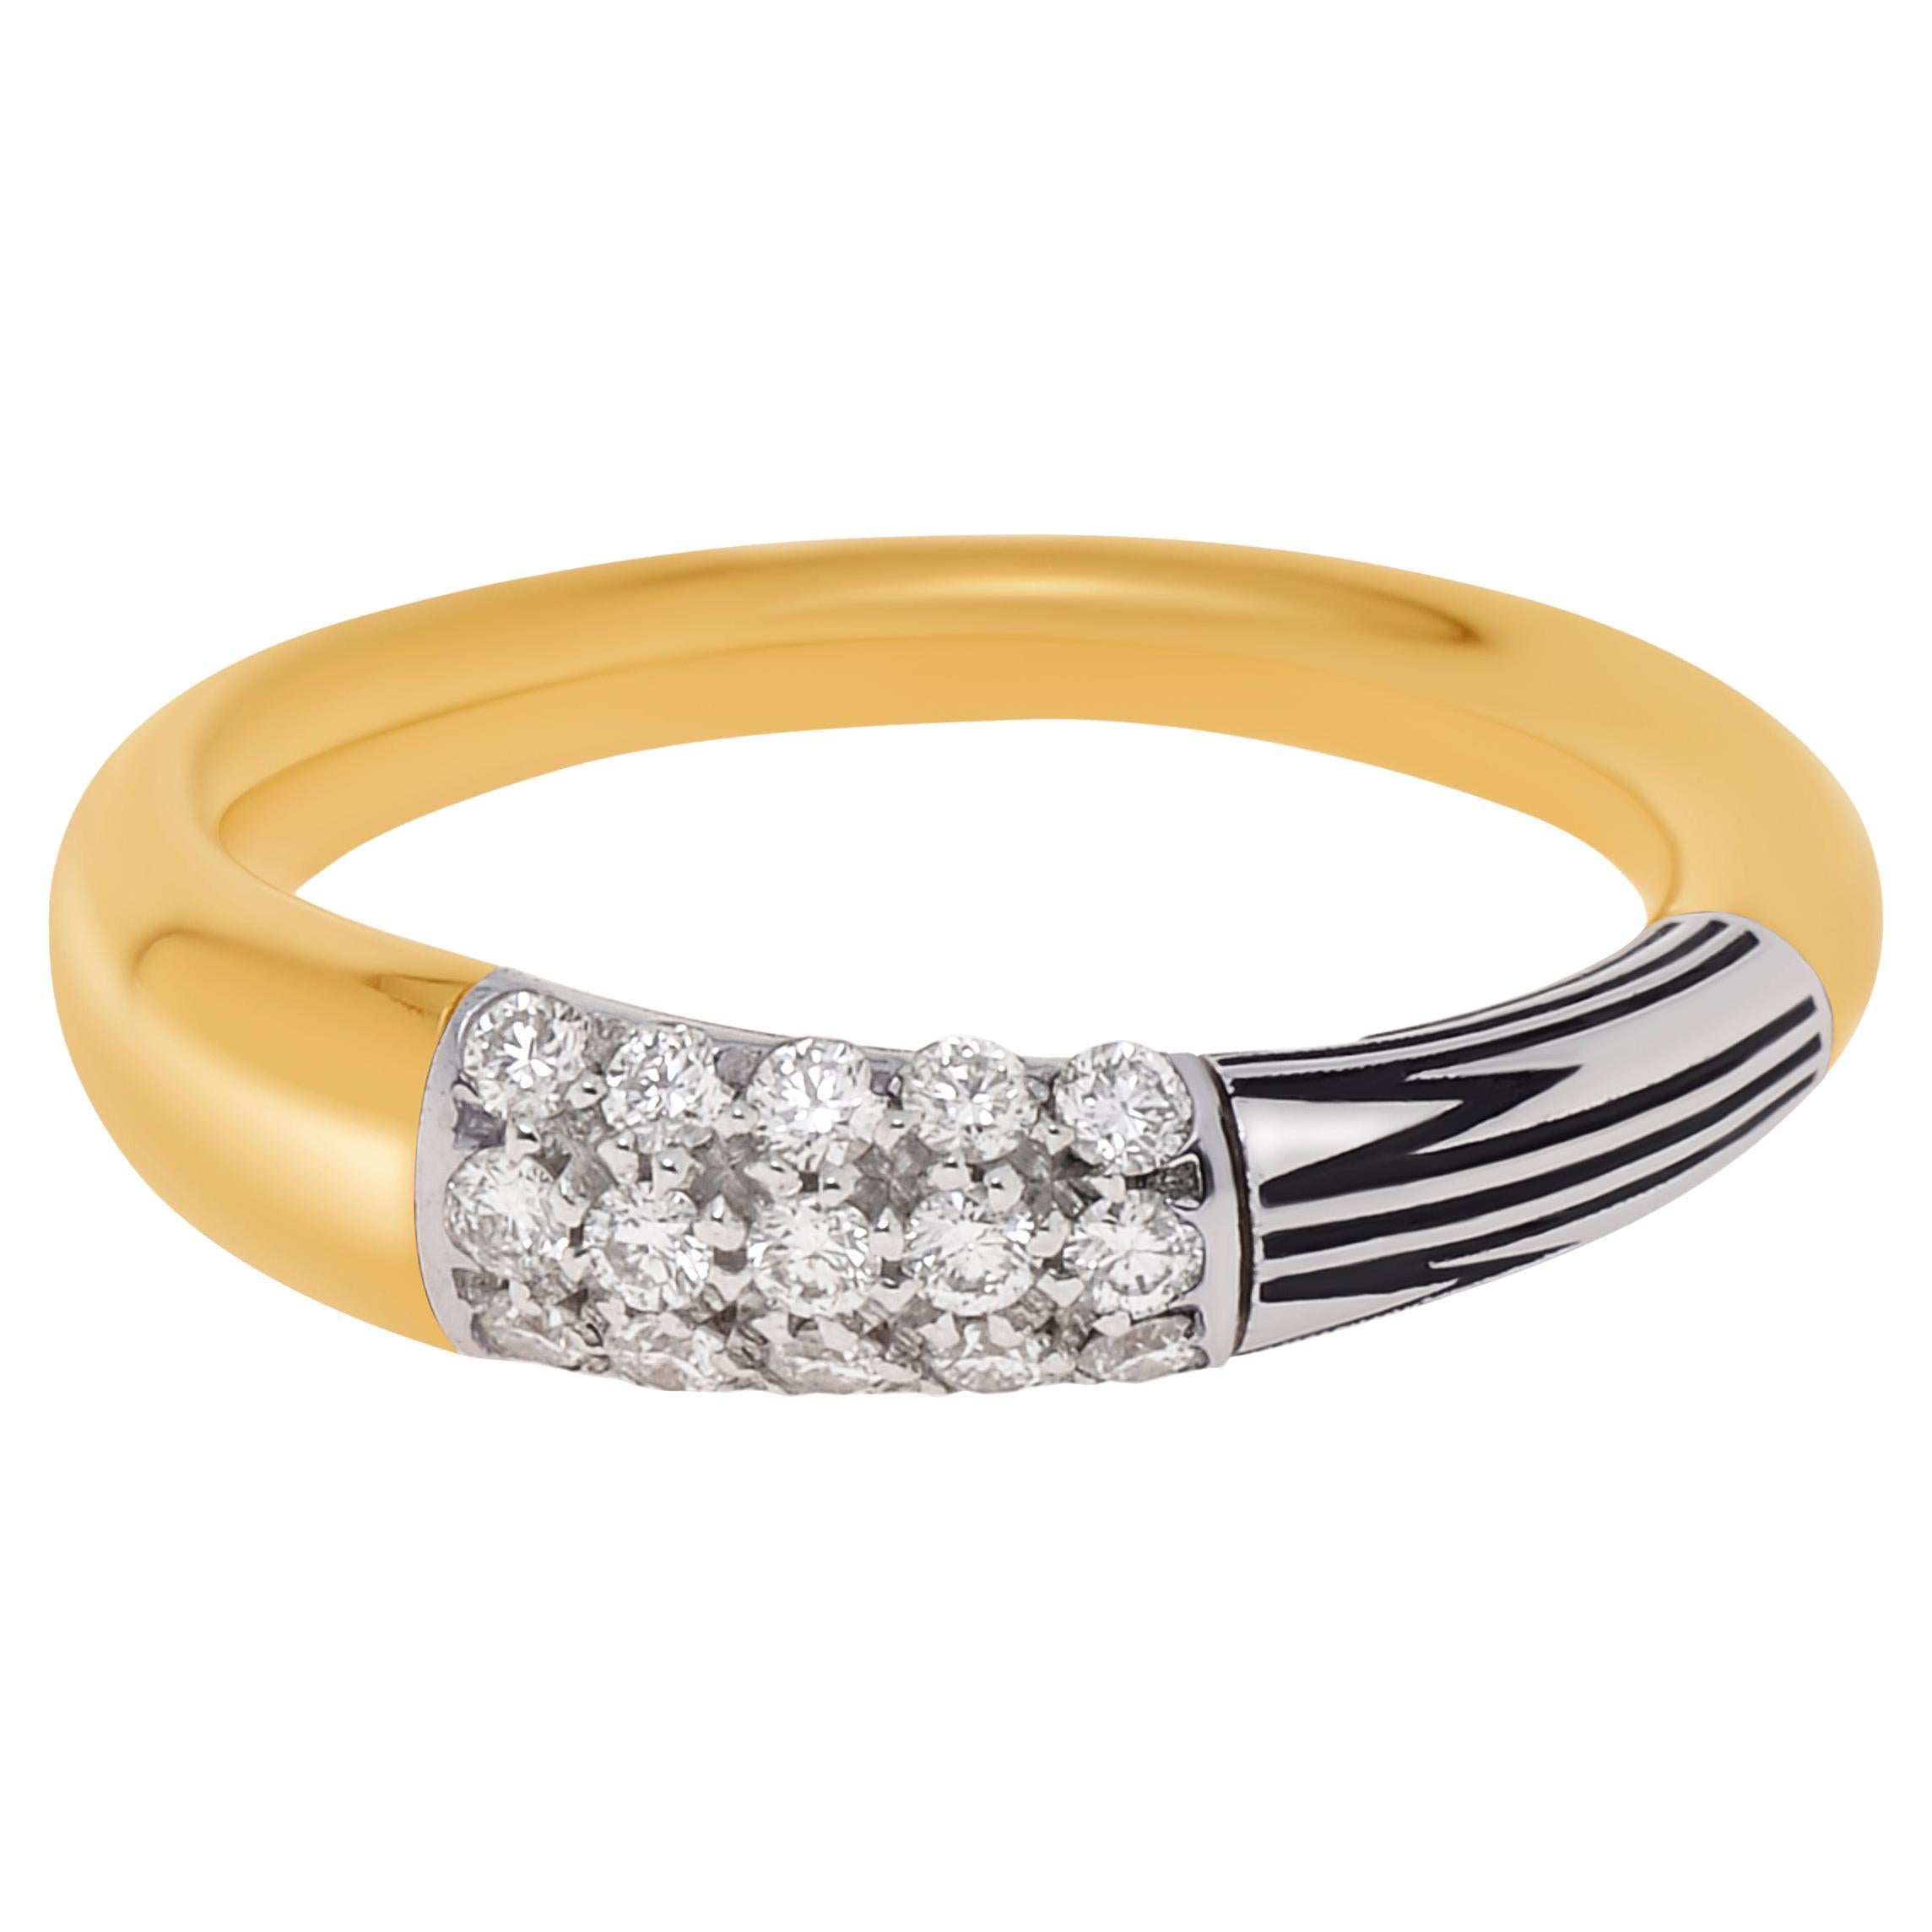 Mimi Milano Tam Tam 18K Yellow & White Gold, Diamond Ring sz 6.75 For Sale